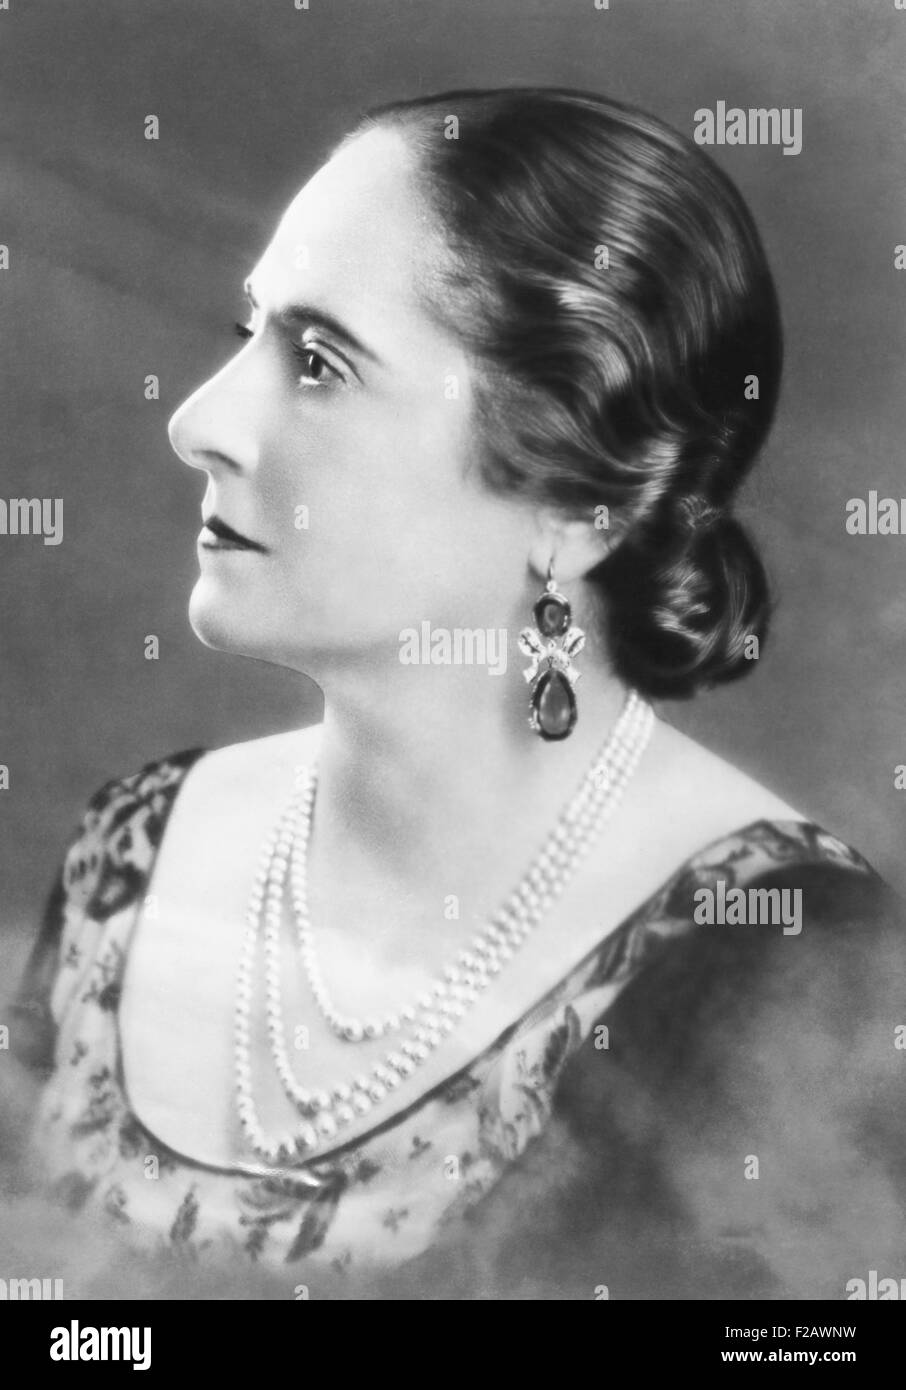 Helena Rubenstein international berühmten Kosmetik Mogul ca. 1930er Jahre. Profilbildnis Edelstein Ohrringe mit Perlen wurde gemacht, als sie ihren 60. Geburtstag näherte und war ein Multi-Millionär. (CSU 2015 11 1272) Stockfoto